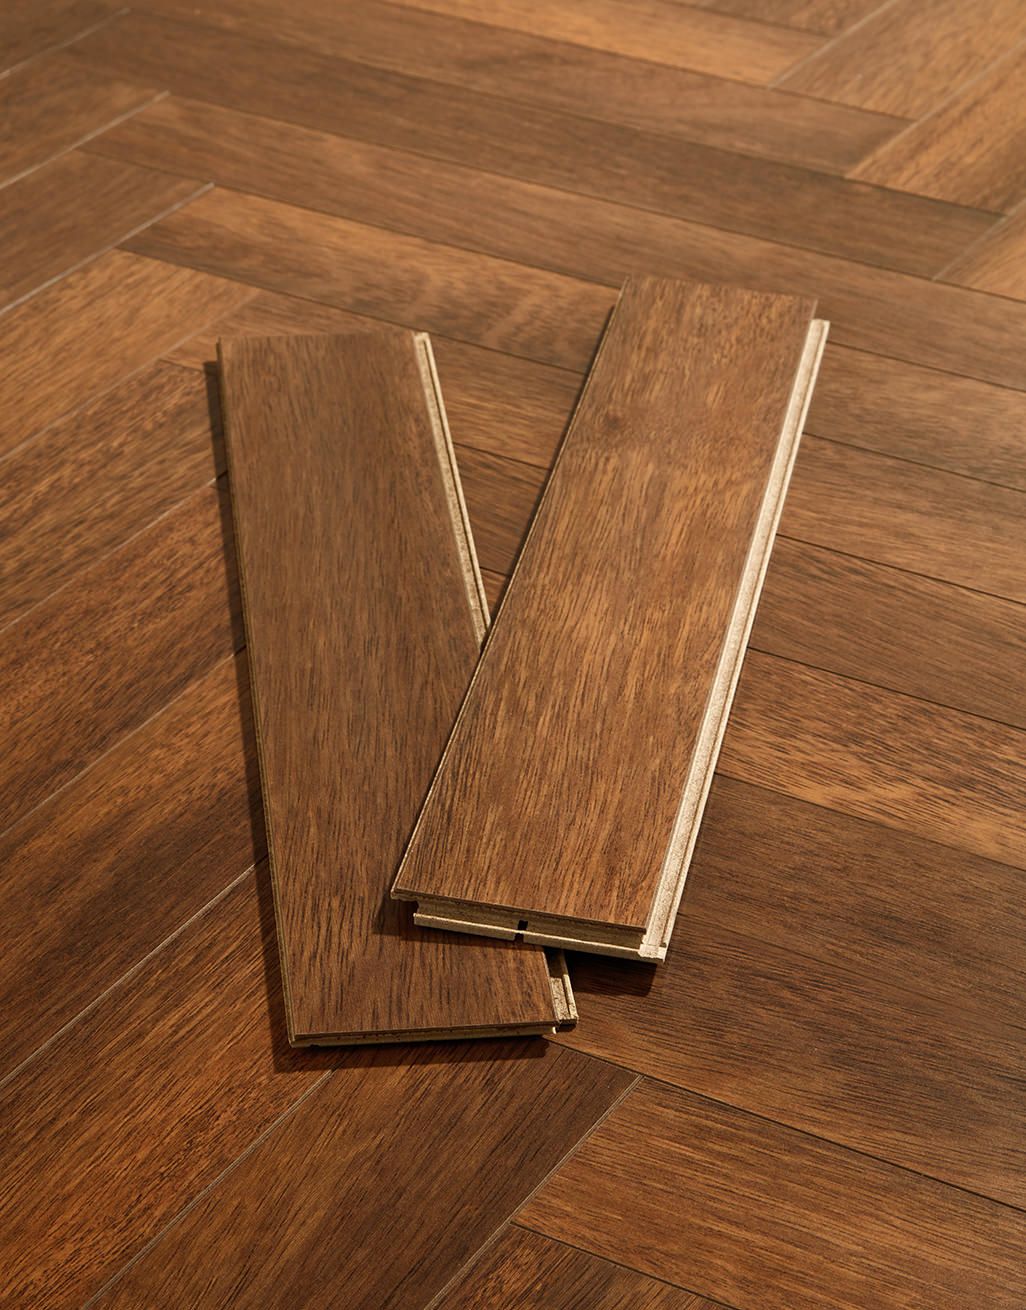 Berry Alloc Cau Merbau Brown, Merbau Solid Hardwood Flooring Reviews